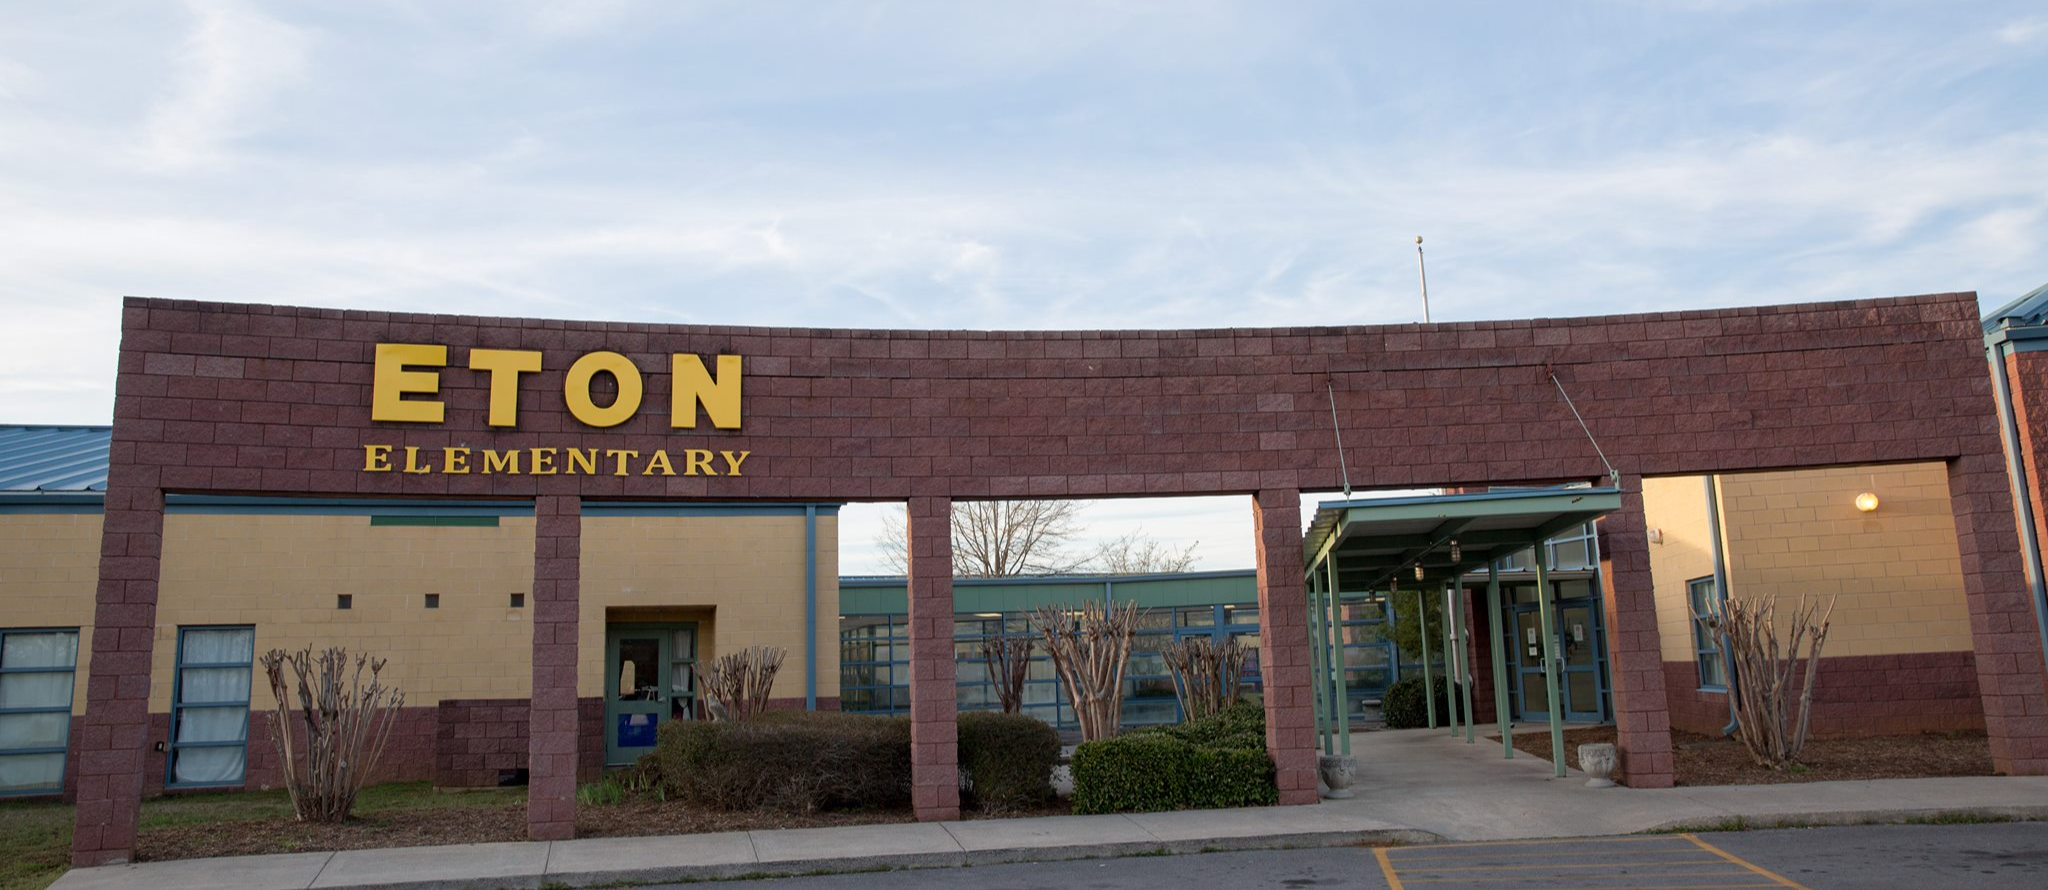 Eton Elementary School